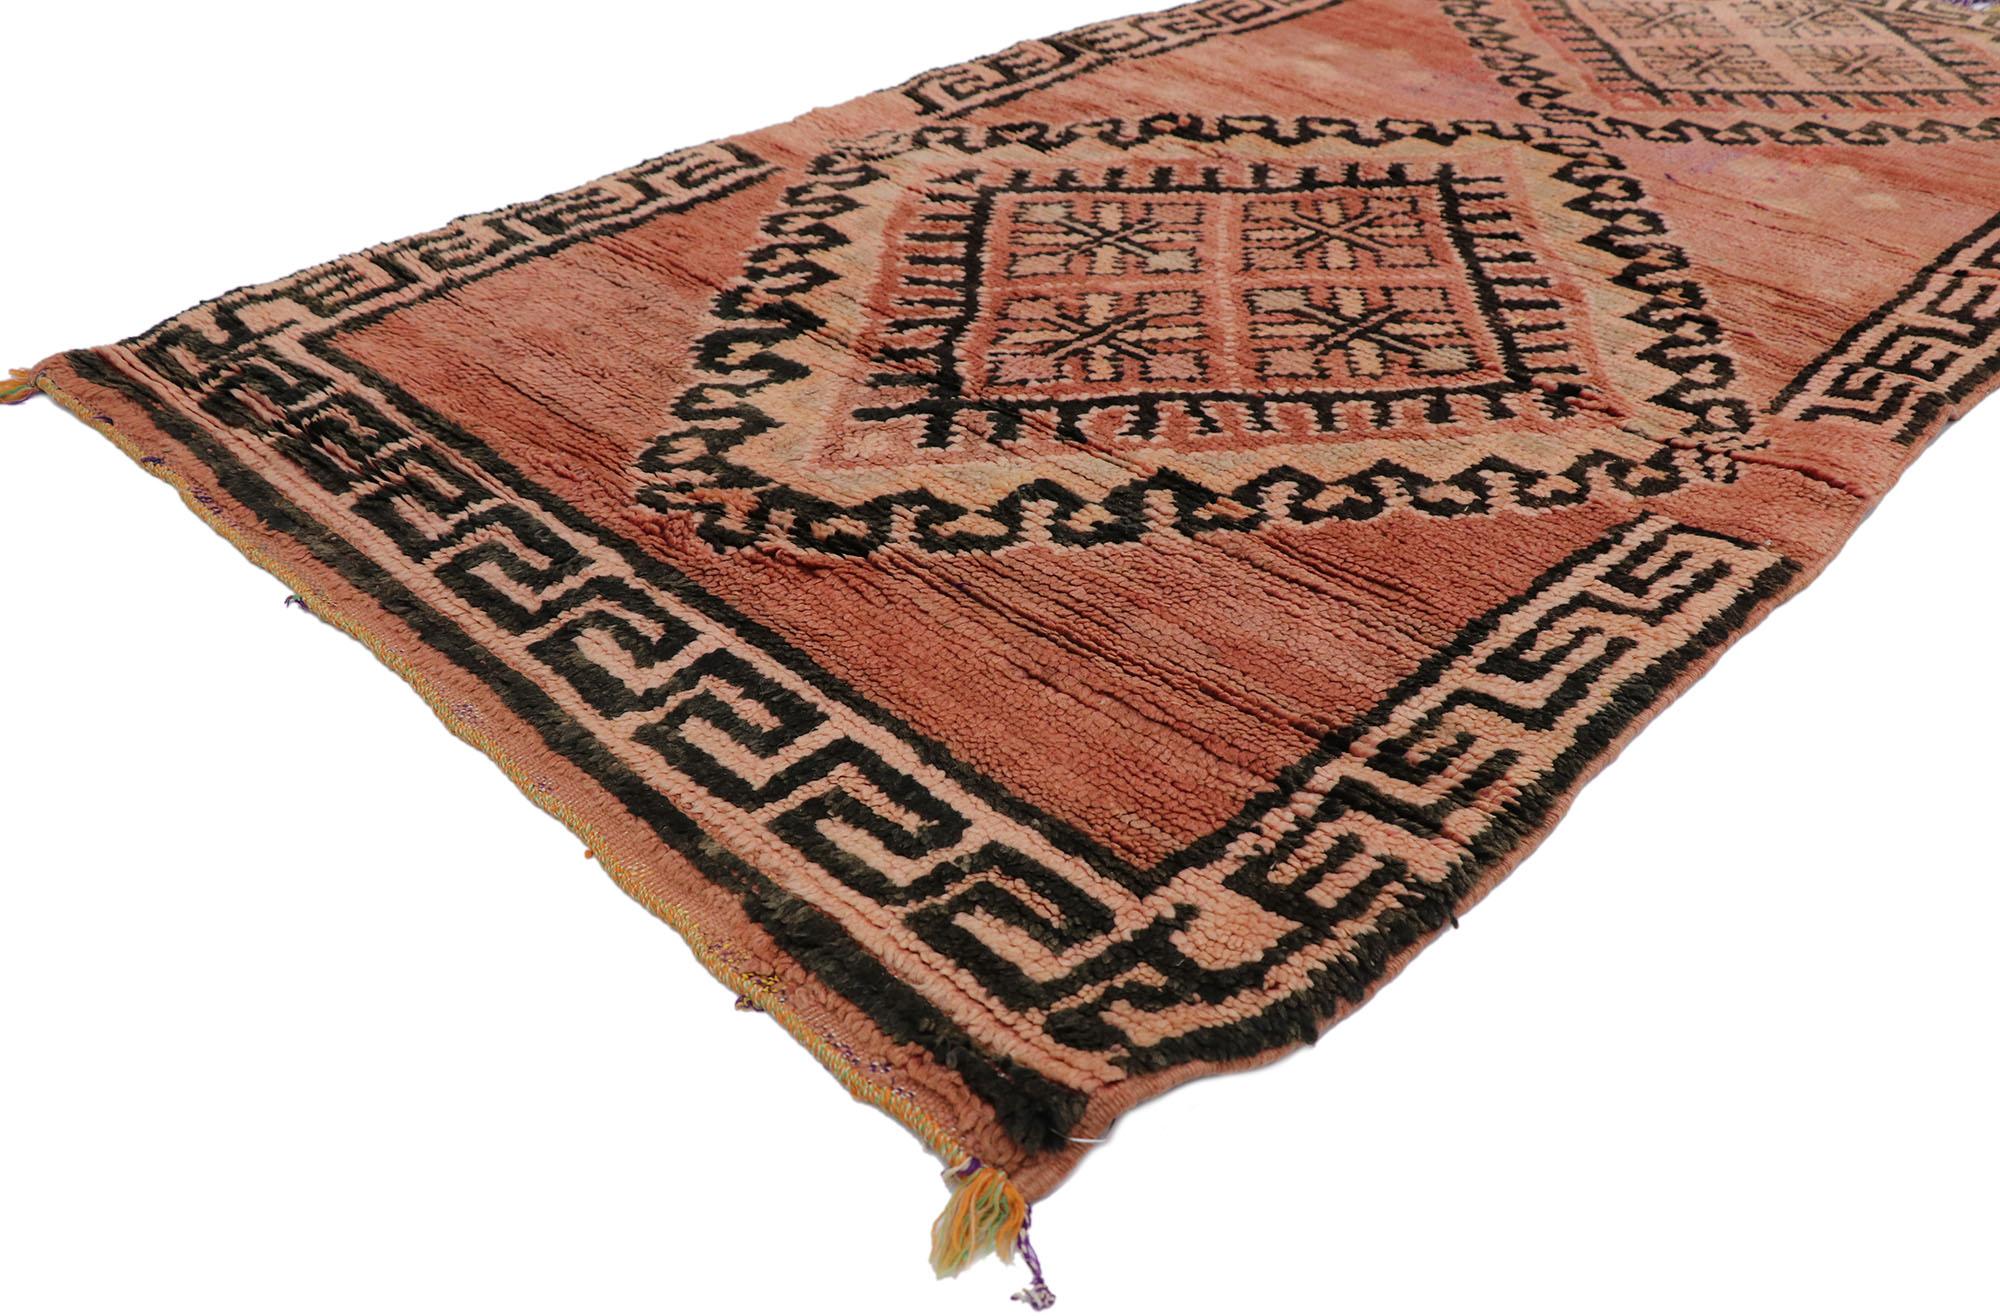 21668 Vieux tapis berbère marocain avec style tribal 03'03 x 06'02. Avec sa simplicité et son design tribal expressif, ce tapis marocain Boujad en laine berbère vintage noué à la main est une vision captivante de la beauté tissée. Le champ abrasé